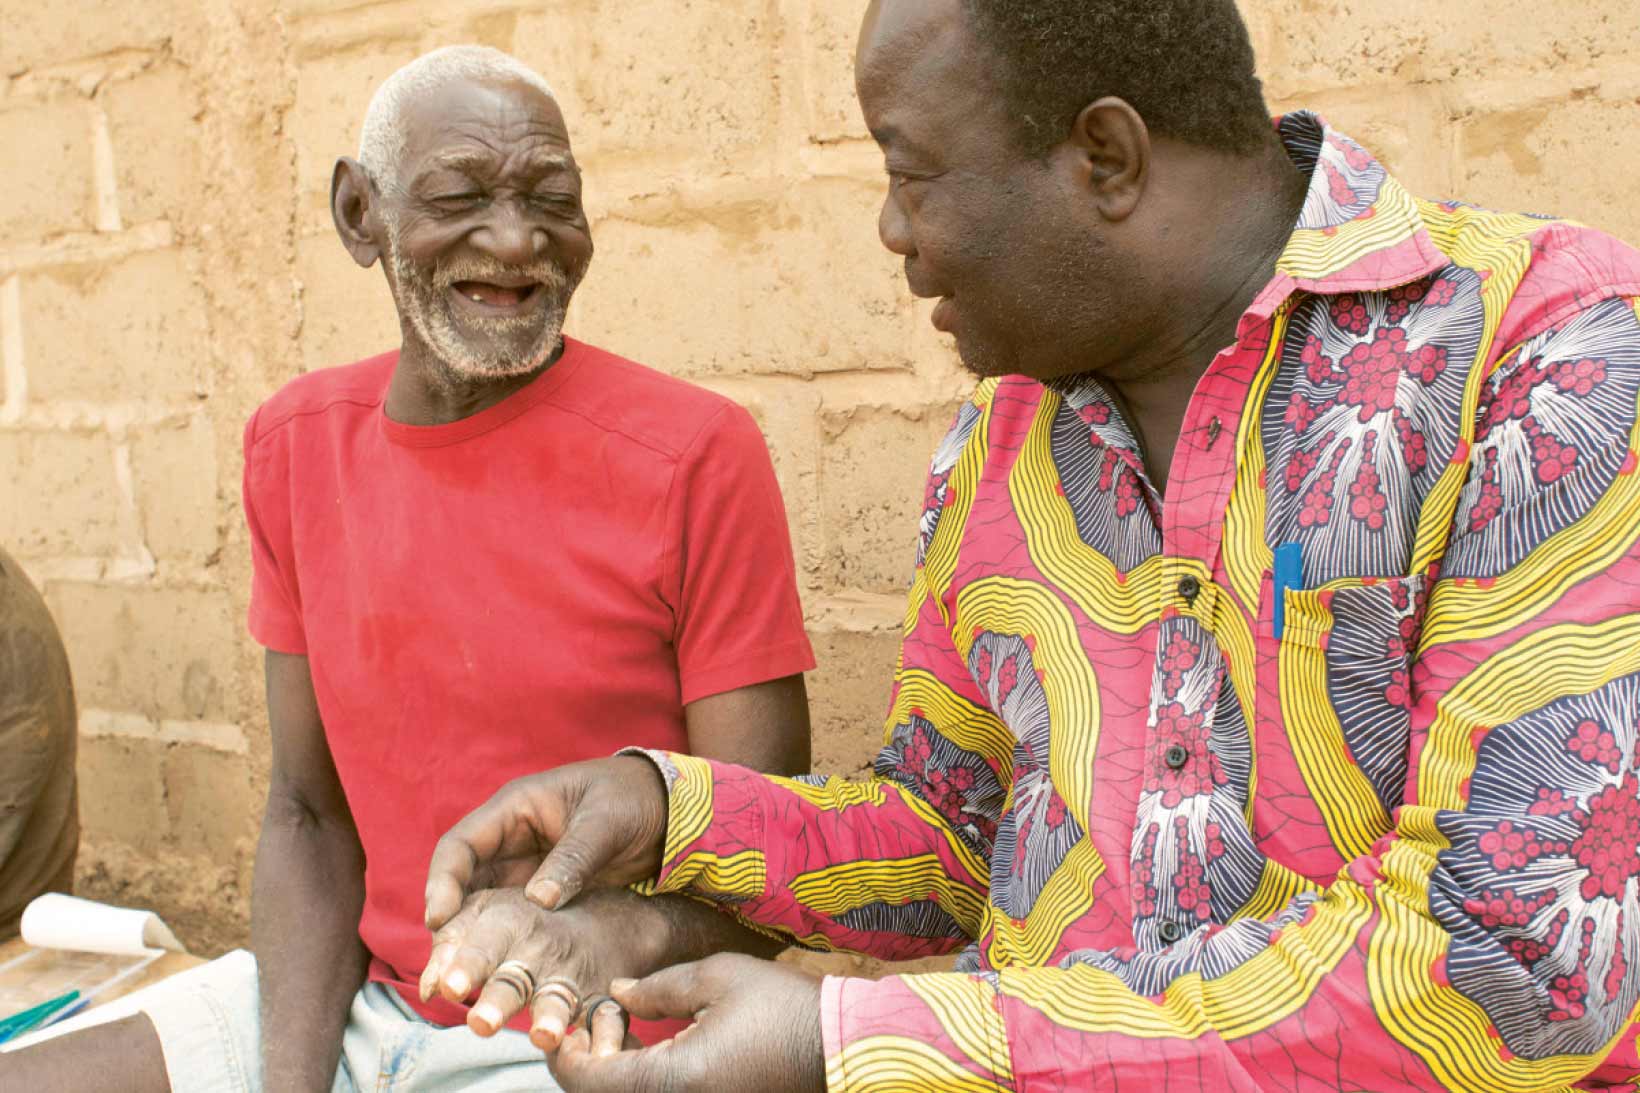 Ein Mann aus Burkina Faso sitzt auf einer Bank und hält die Hand von einem anderen Mann neben sich. Beide lächeln.